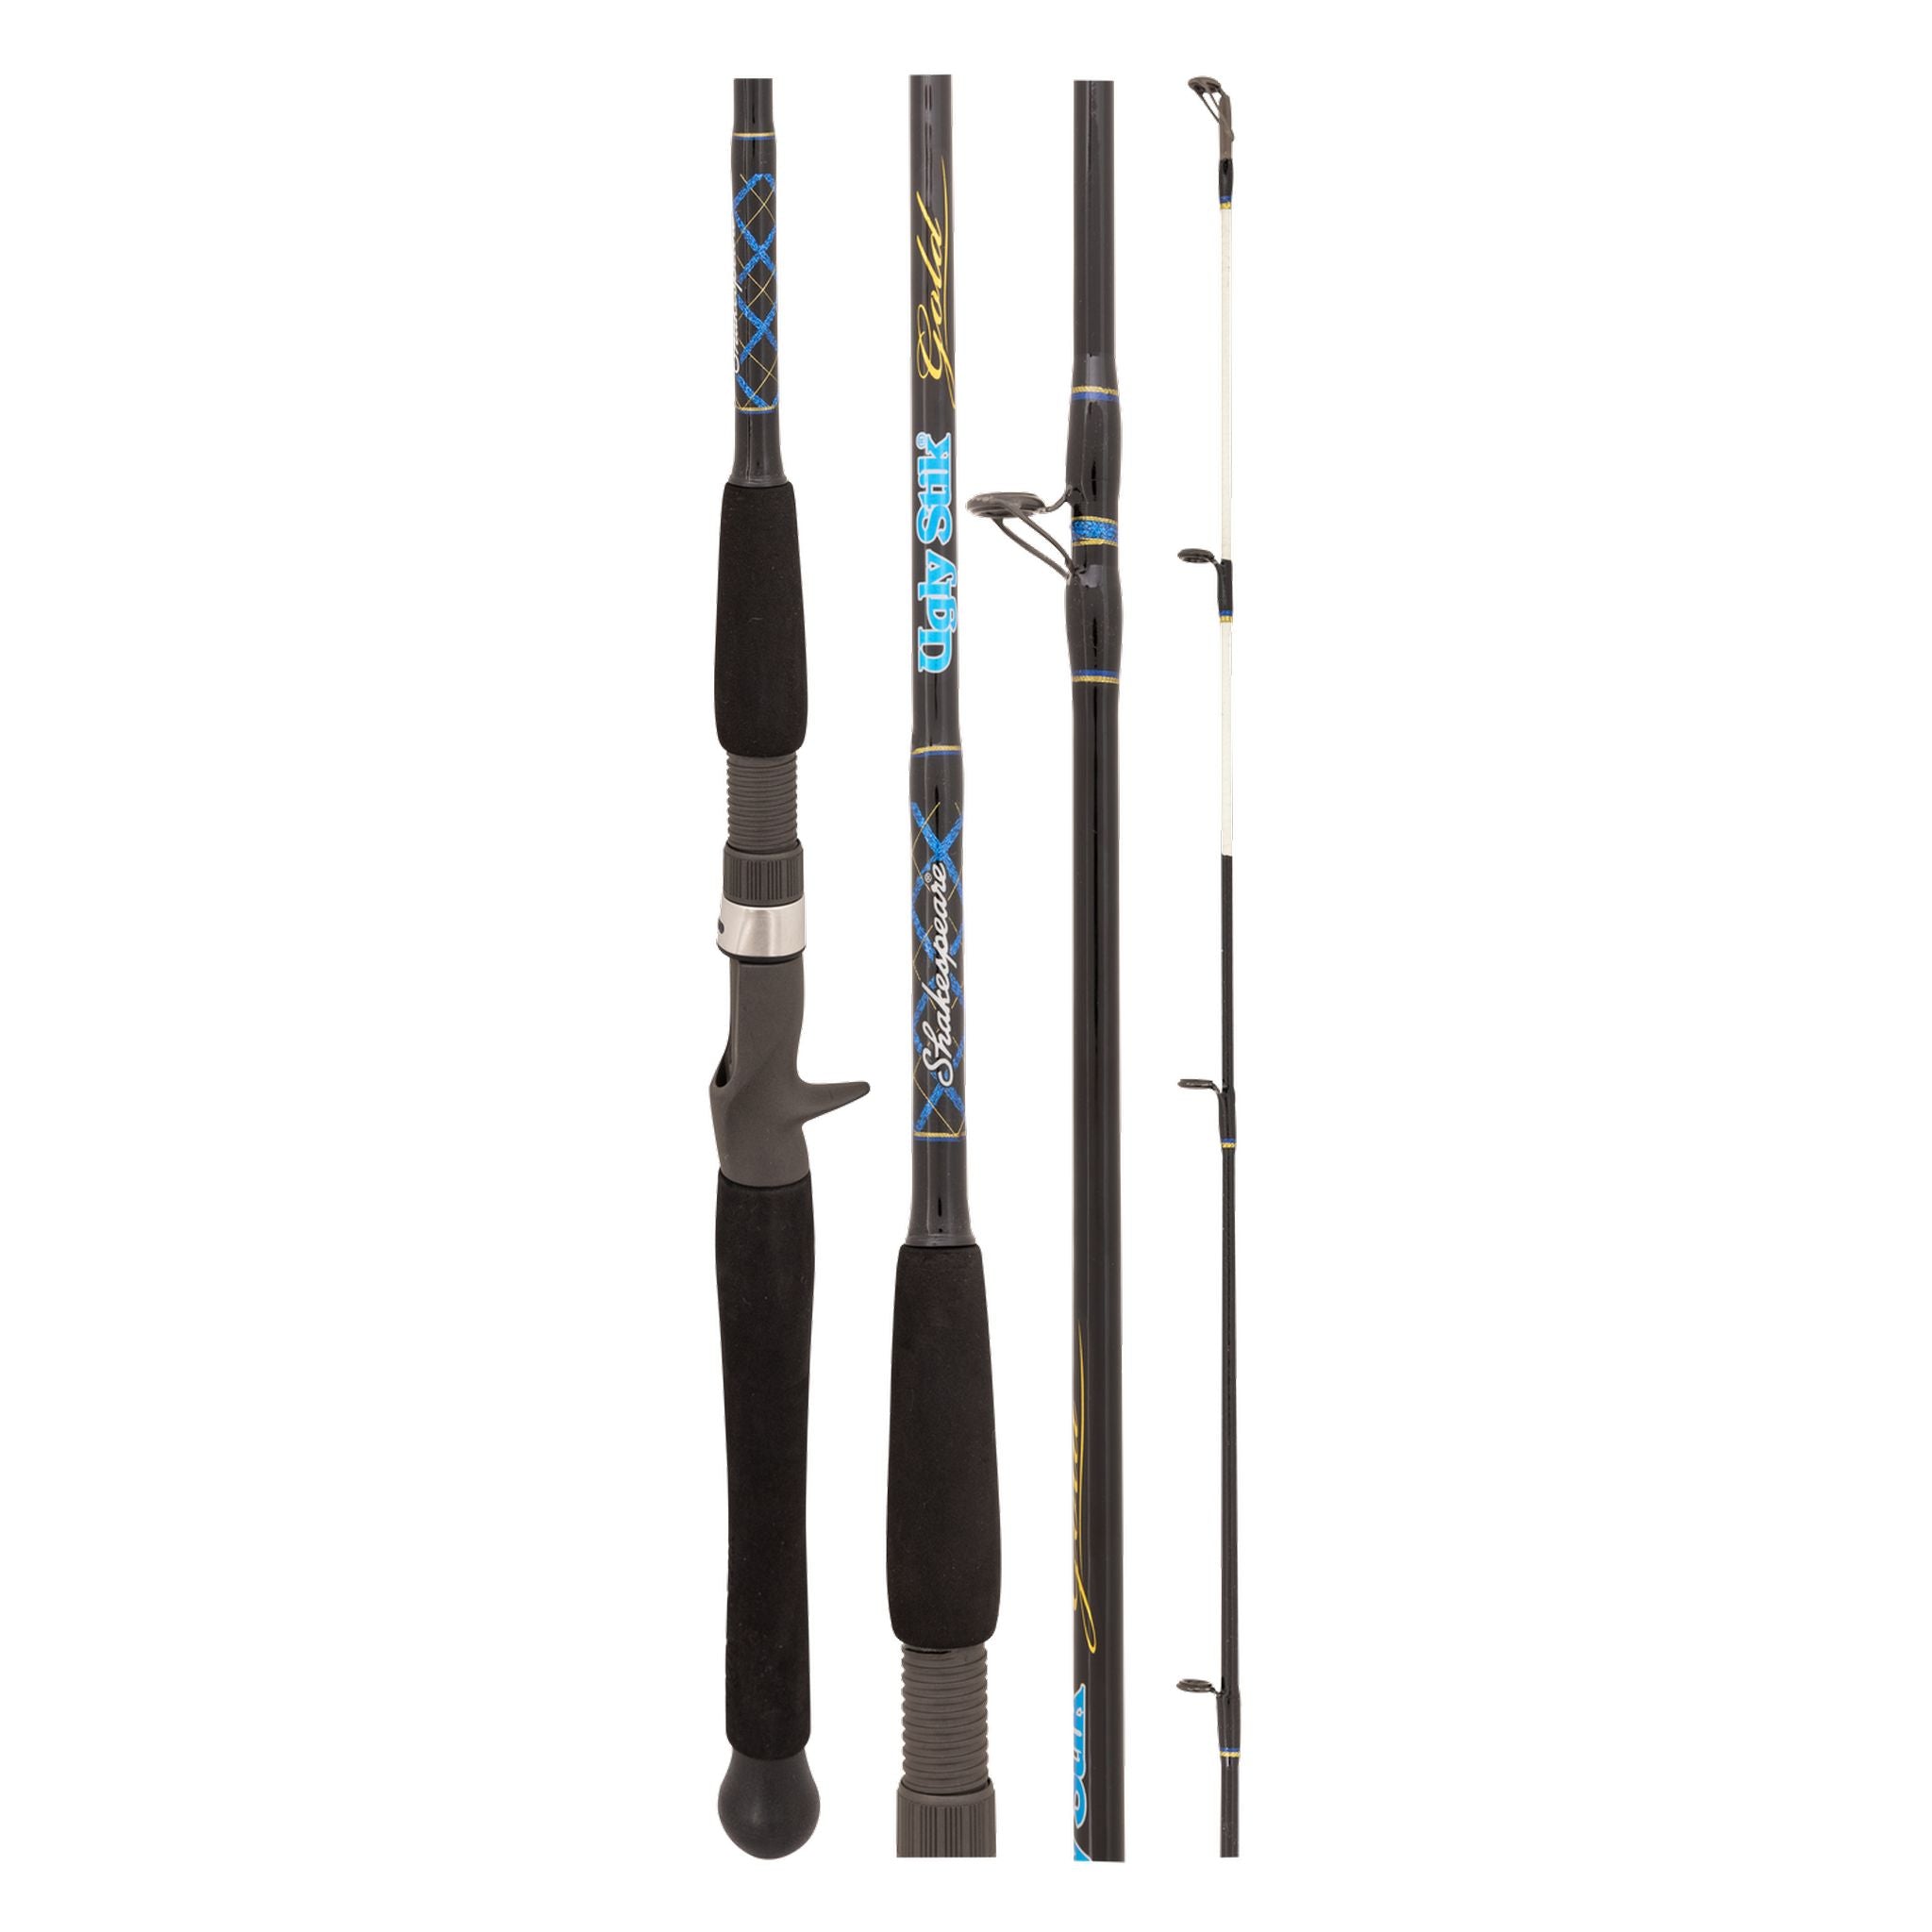 Ugly Stick USG-OHC 561H 10-15kg 30-120g Overhead Fishing Rod